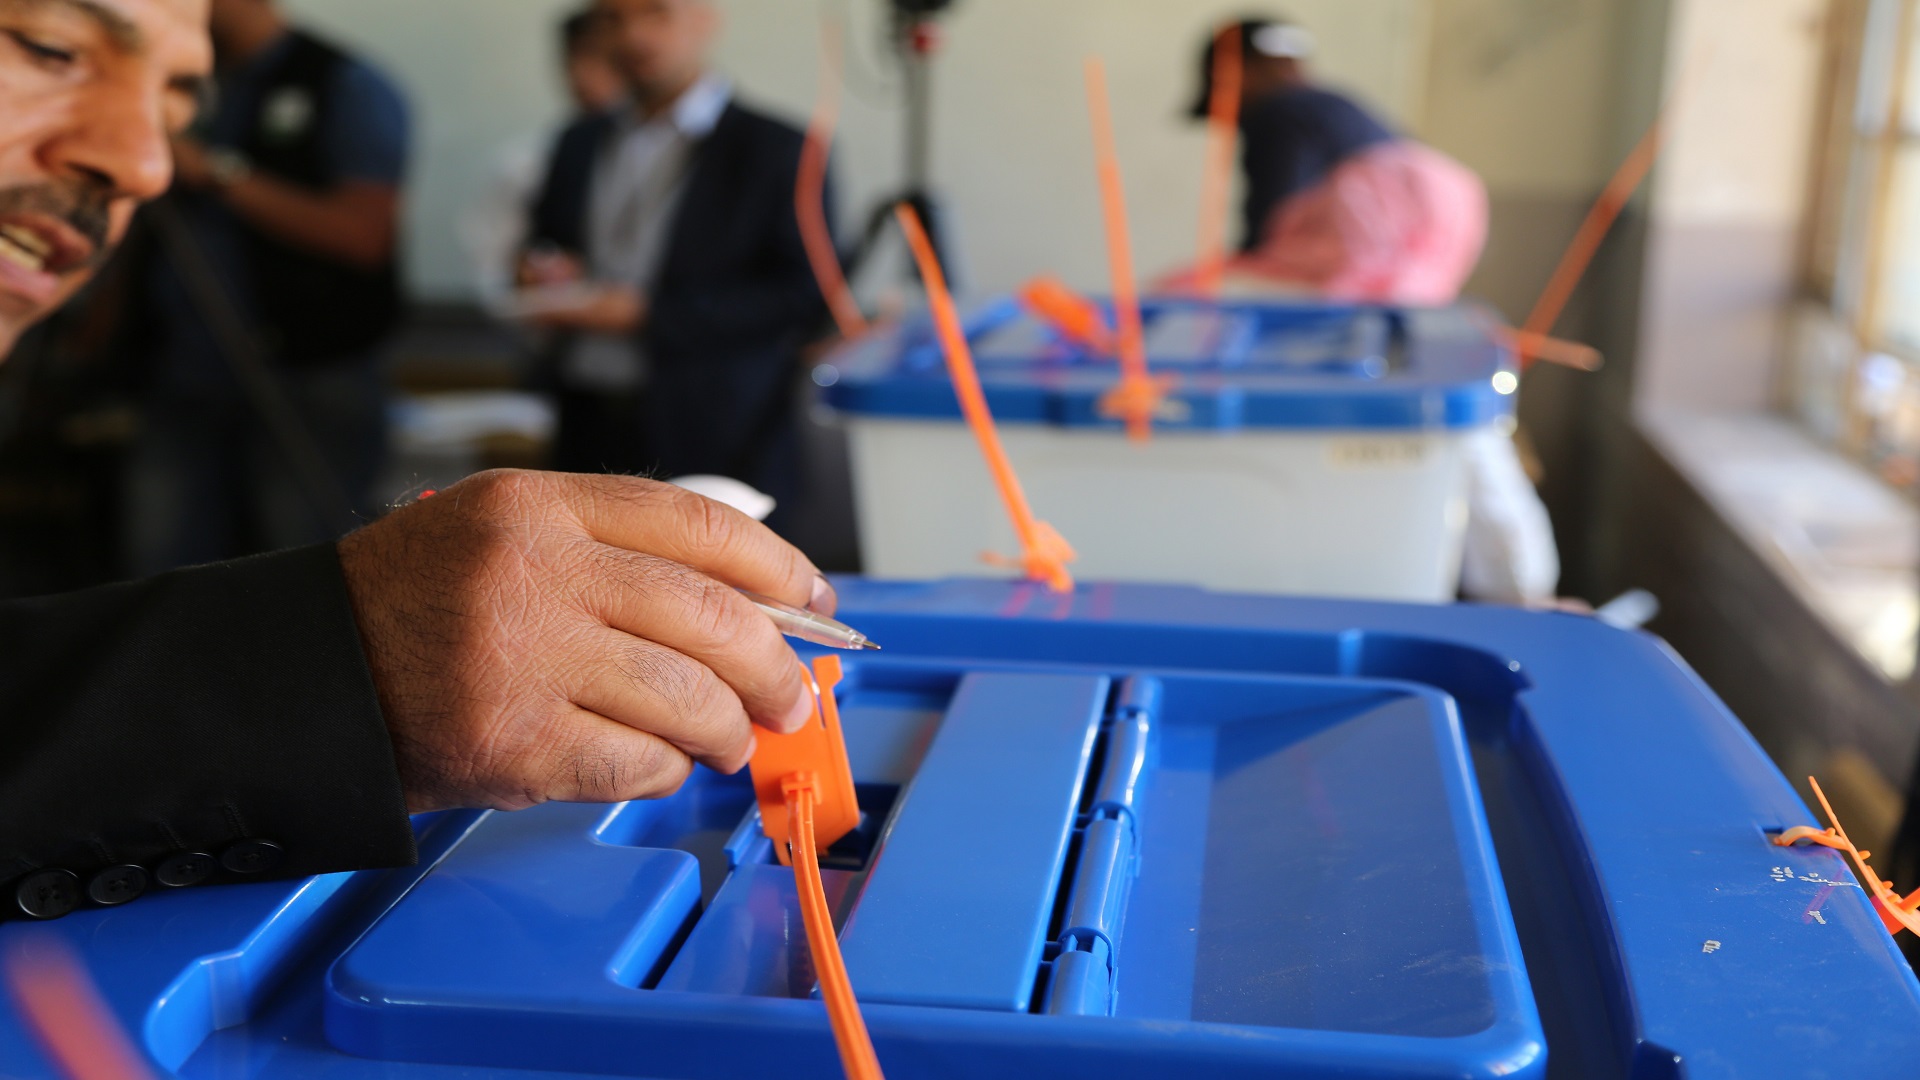   مفوضية الانتخابات العراقية: نسبة المشاركة بلغت 44.5% ولا يزال فرز الأصوات مستمرًا